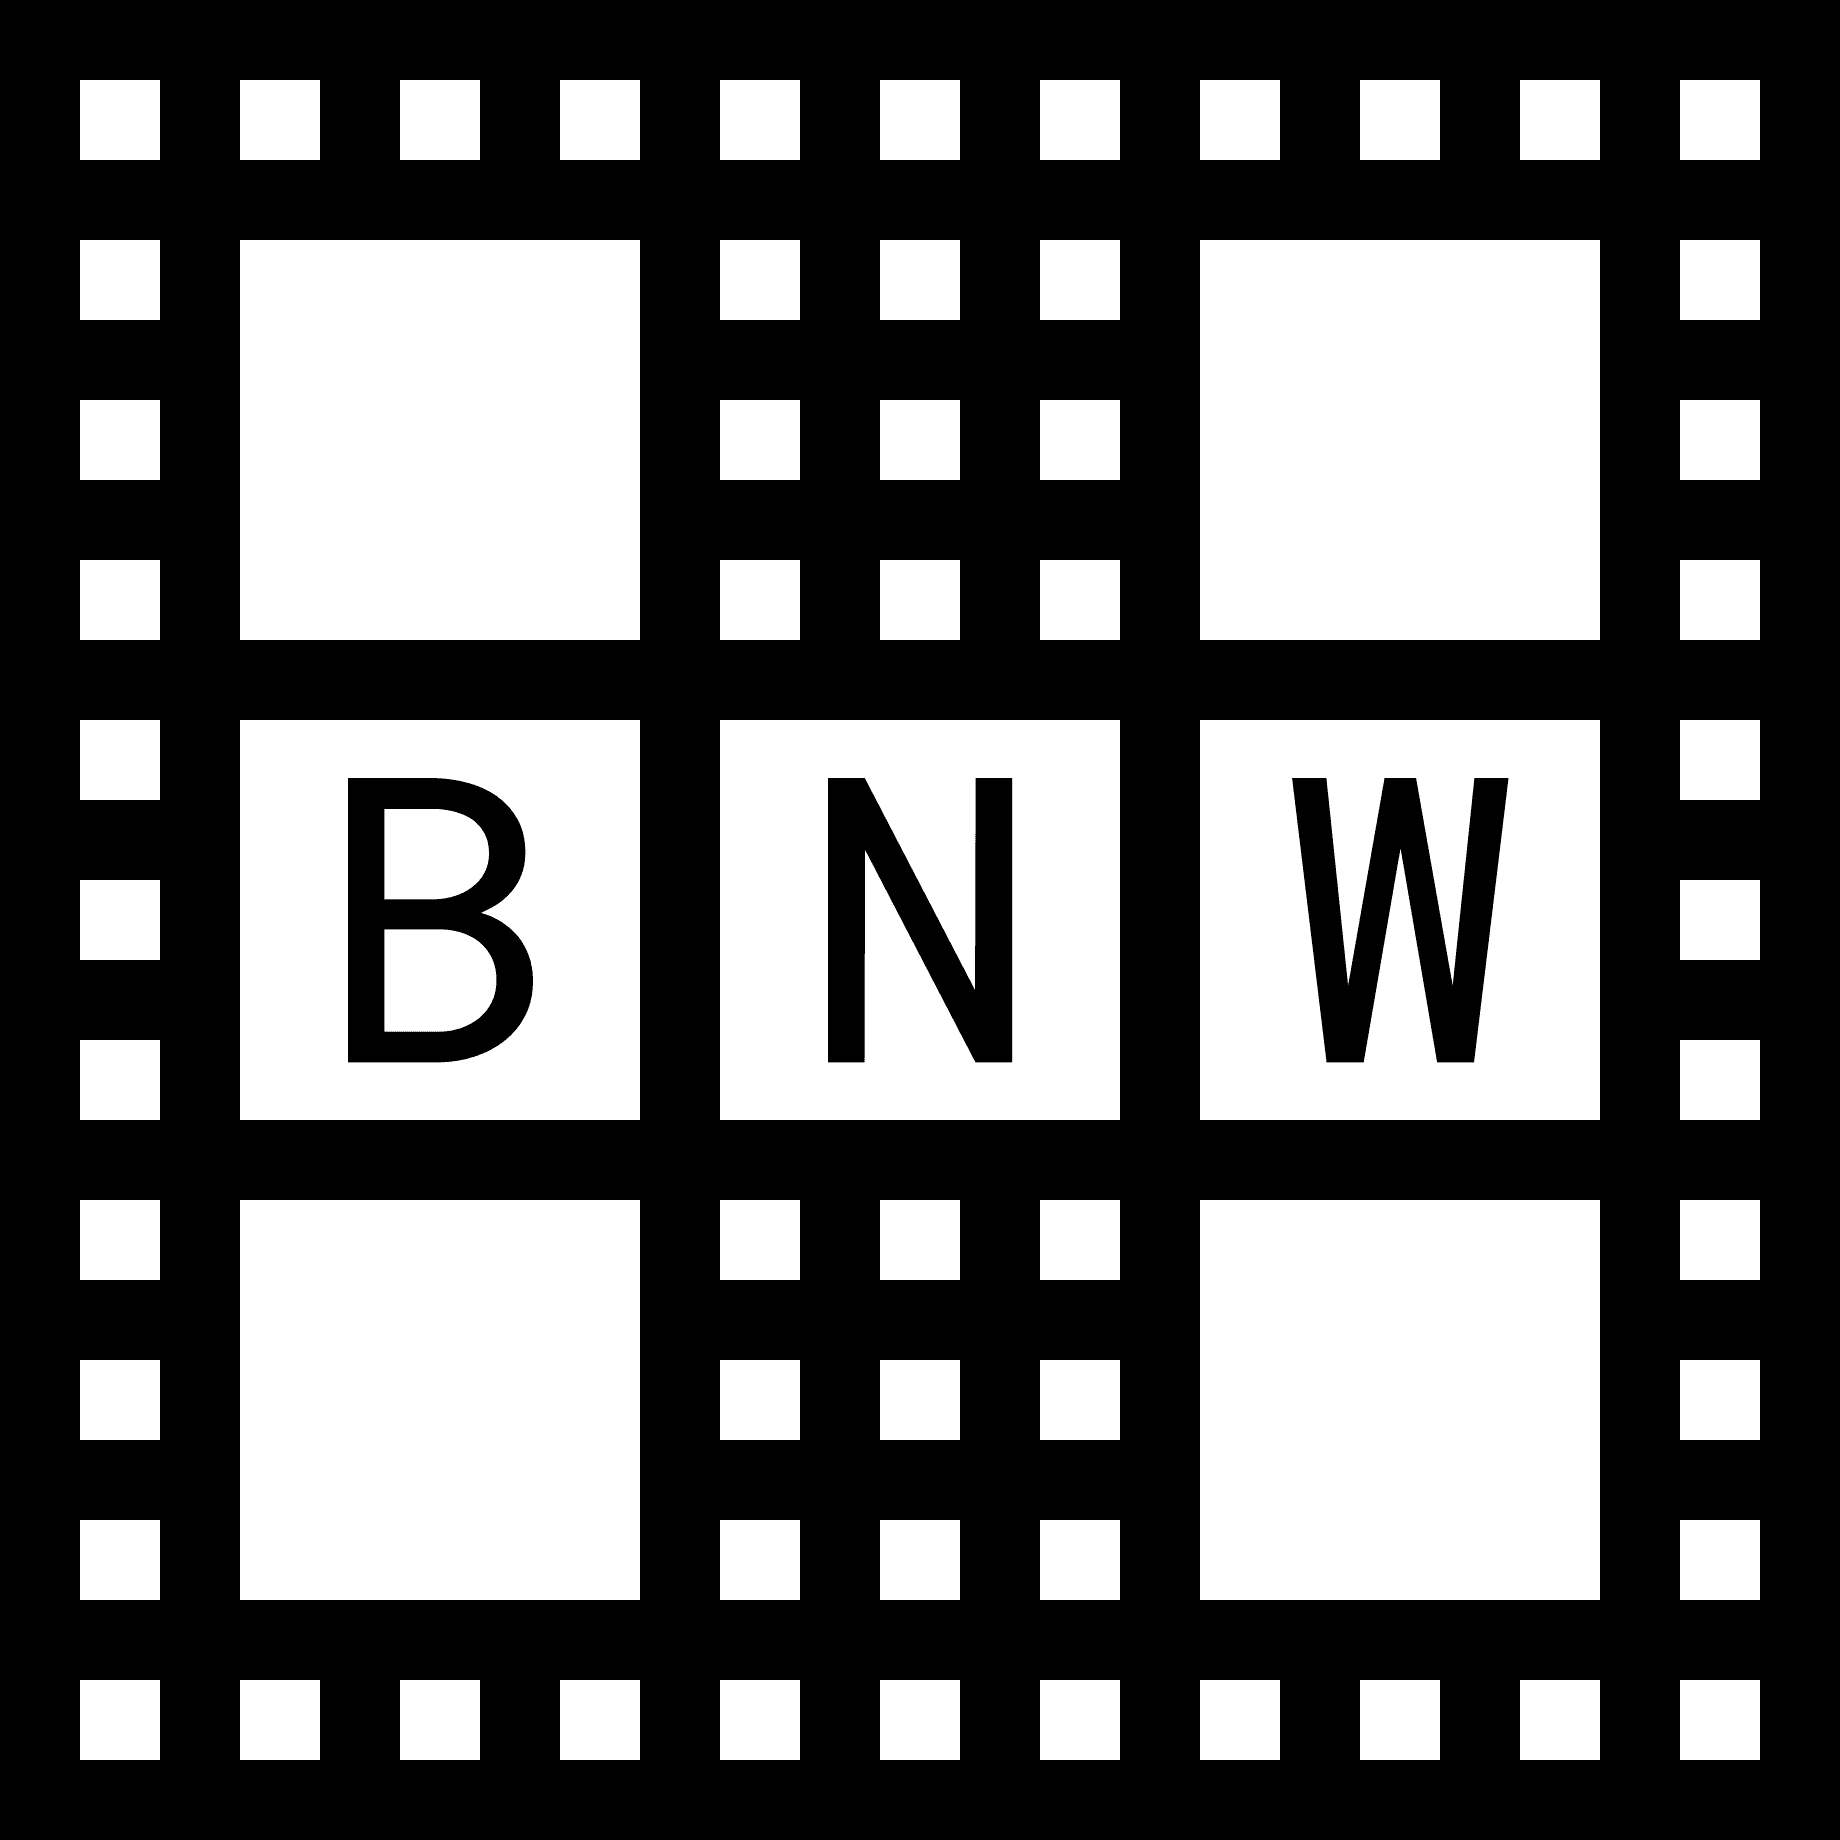 bnwpics